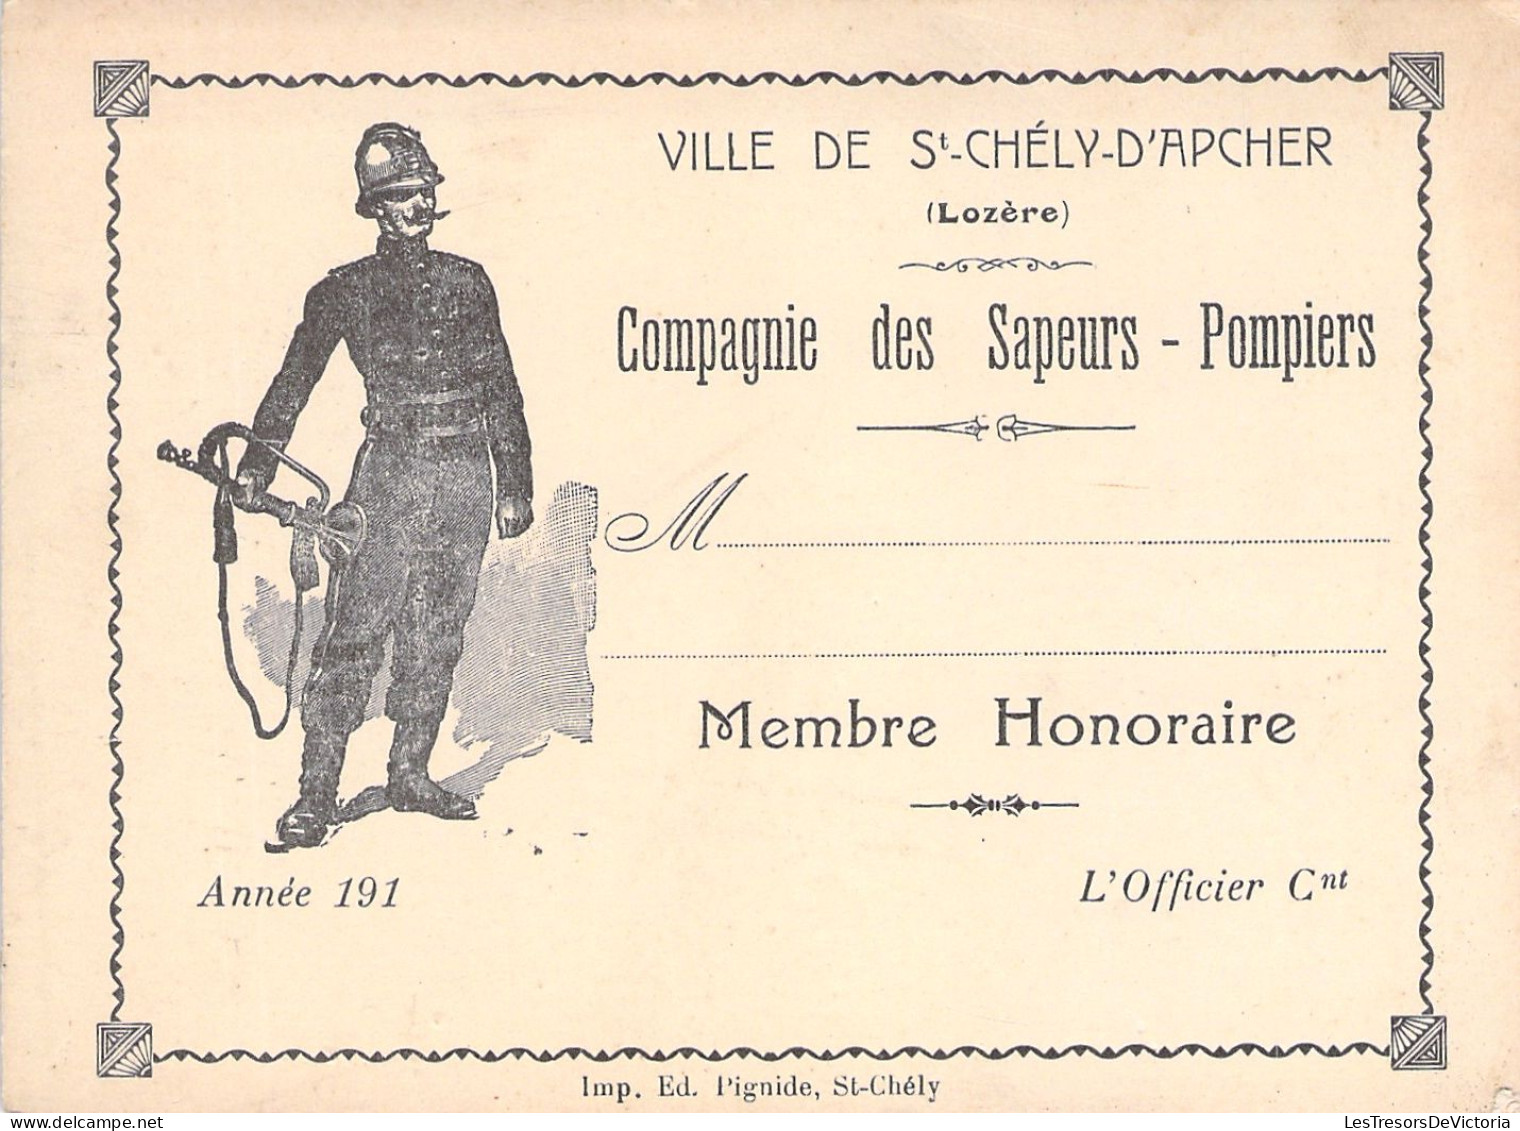 Ville De St Chely D'apcher - Lozere - Compagnie Des Sapeurs Pompiers - Membre Honoraire - Carte De Membre - 12x9cm - Cartes De Membre